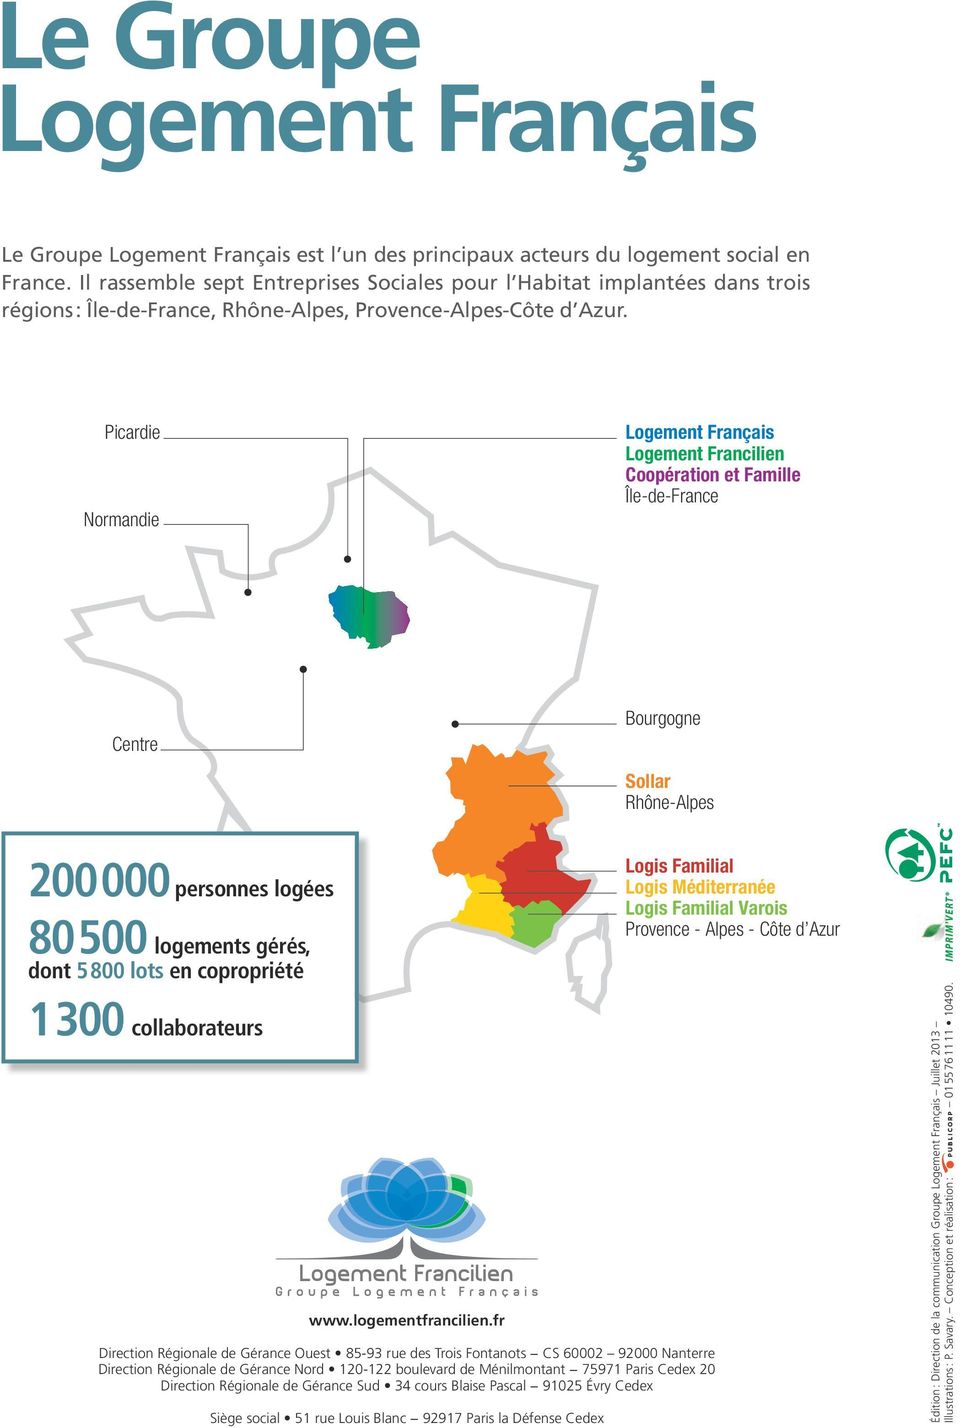 Picardie Normandie Logement Français Logement Francilien Coopération et Famille Île-de-France Centre Bourgogne Sollar Rhône-Alpes 200 000 personnes logées 80 500 logements gérés, dont 5 800 lots en